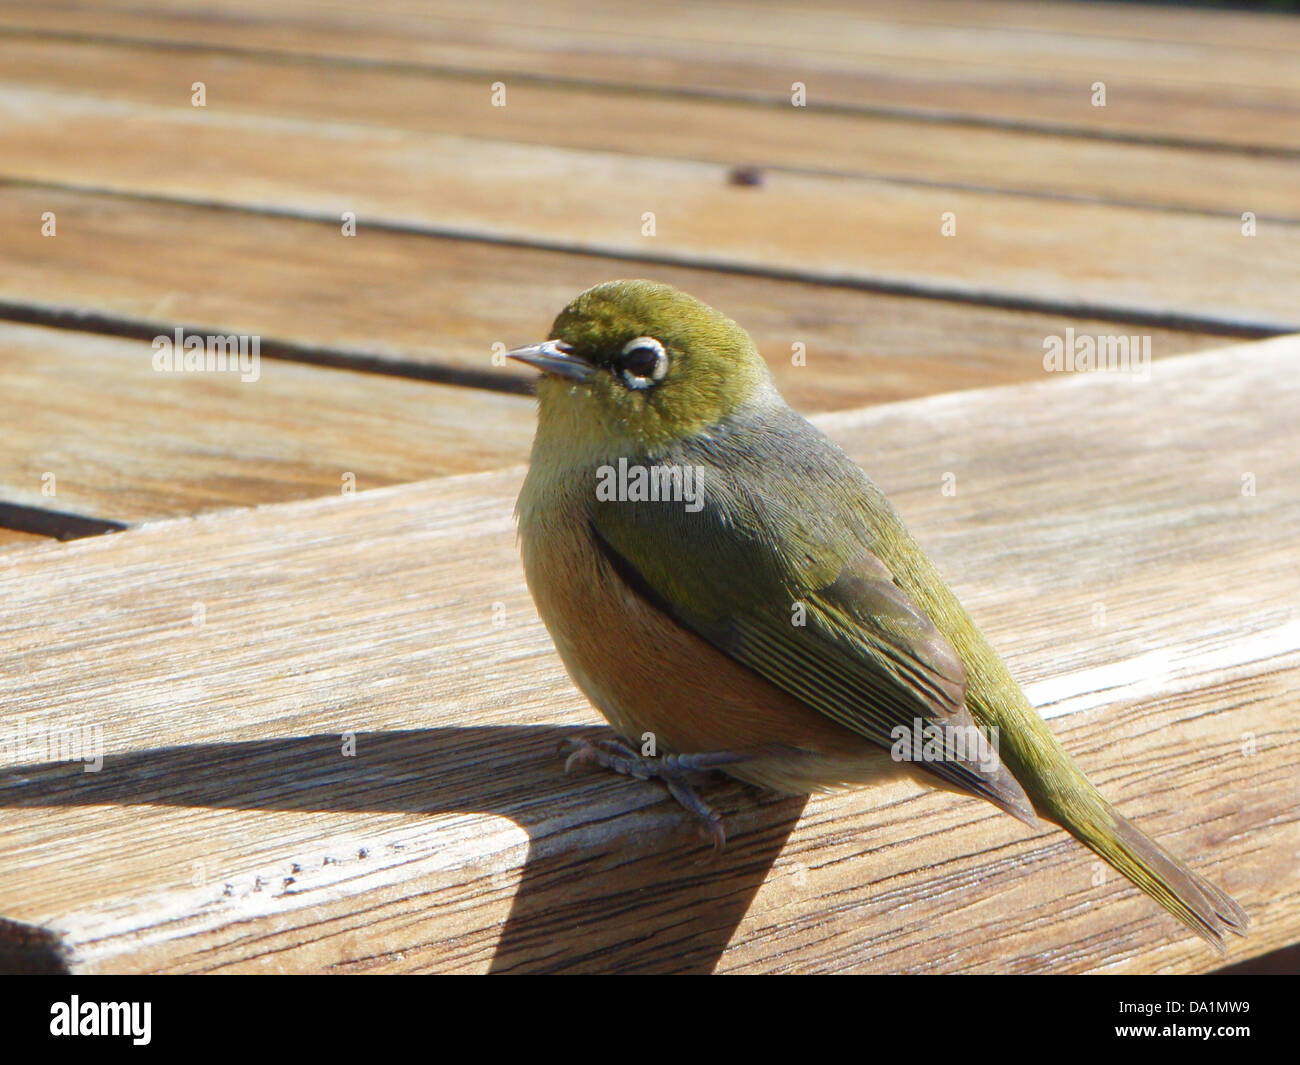 Un po' di verde bird knowns come una cera-occhio o silvereye appollaiato su un parco di legno tabella/banco. Foto Stock